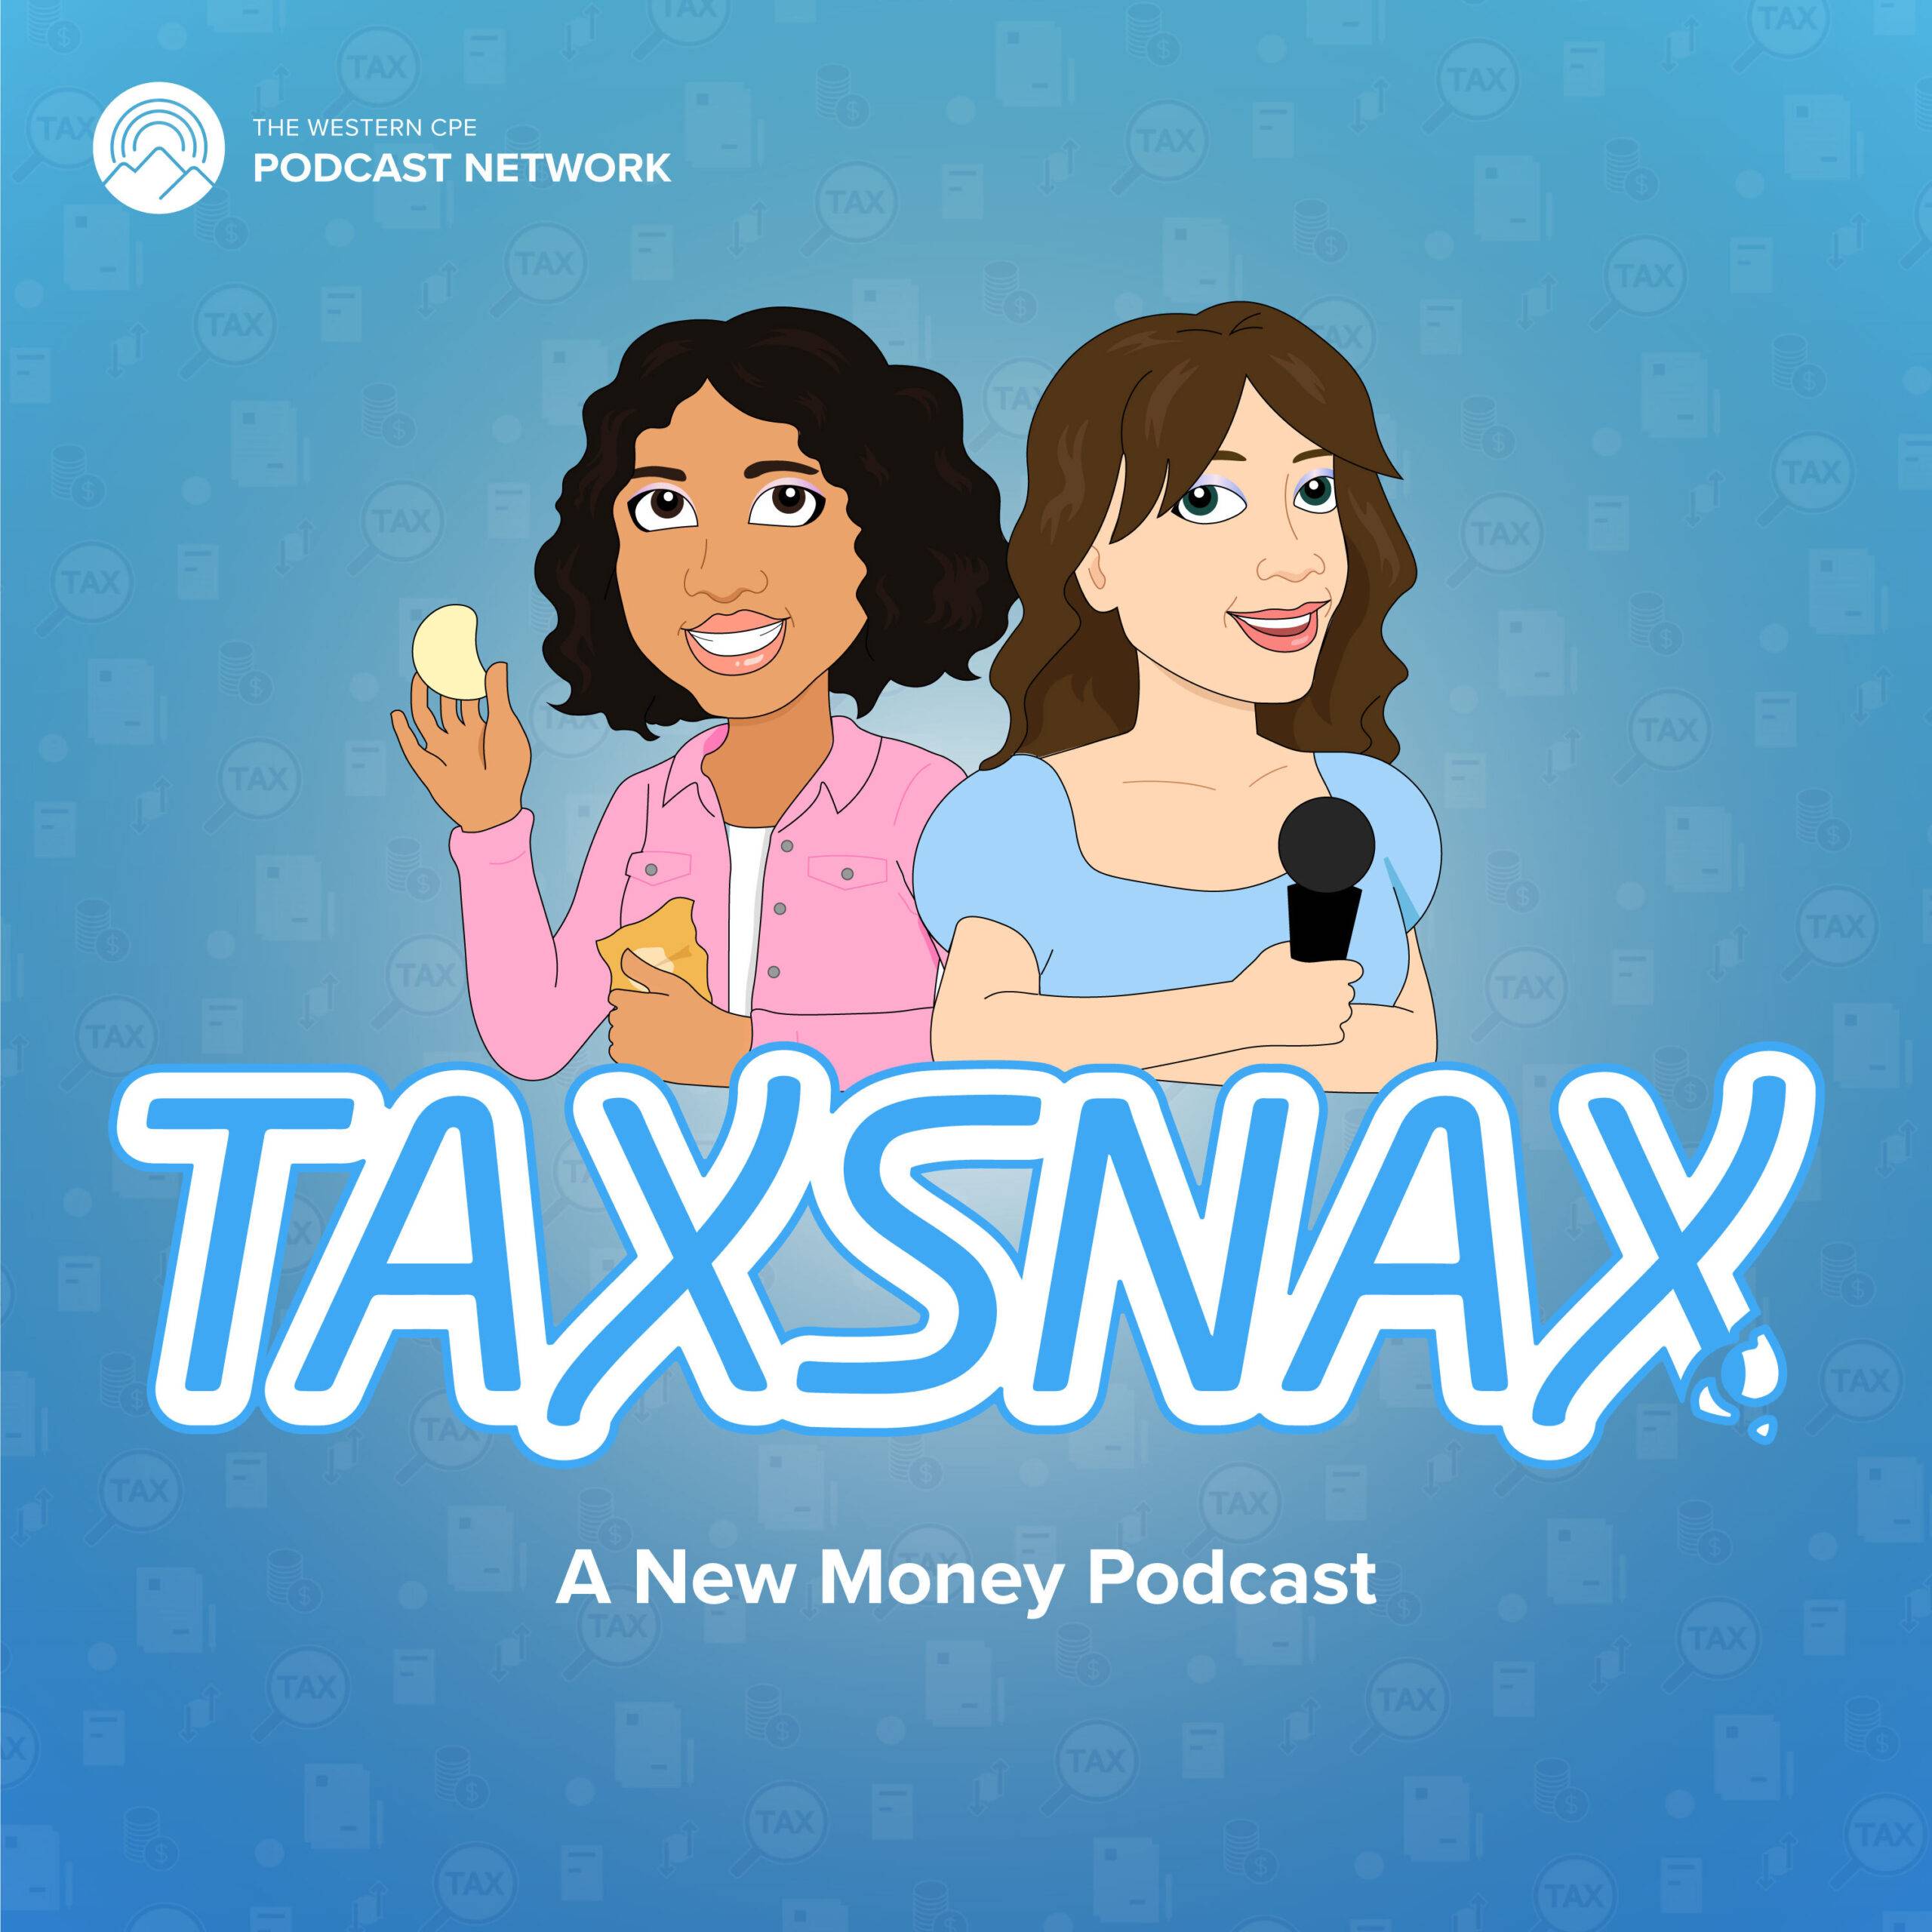 TaxSnax Podcast || Western CPE || Bozeman, Montana